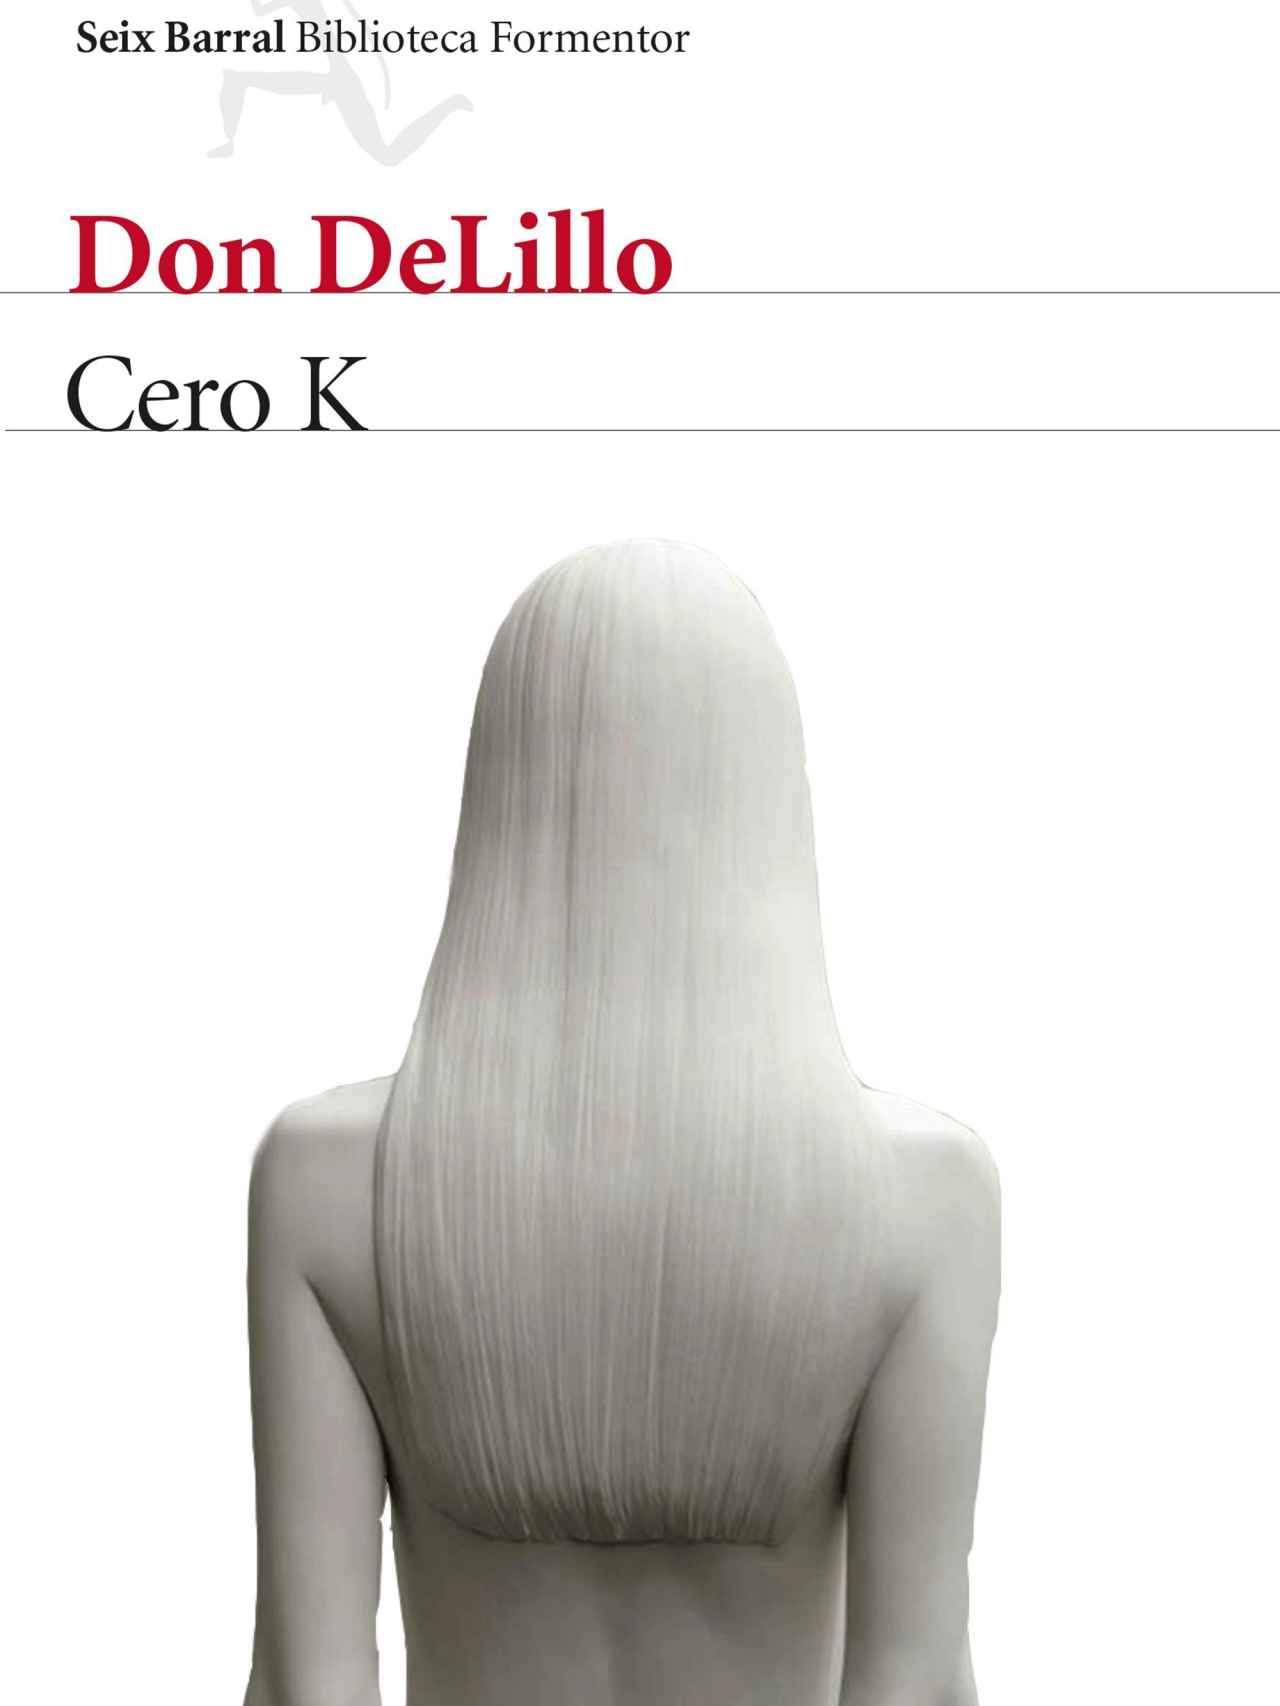 Portada de Cero K, de Don DeLillo.